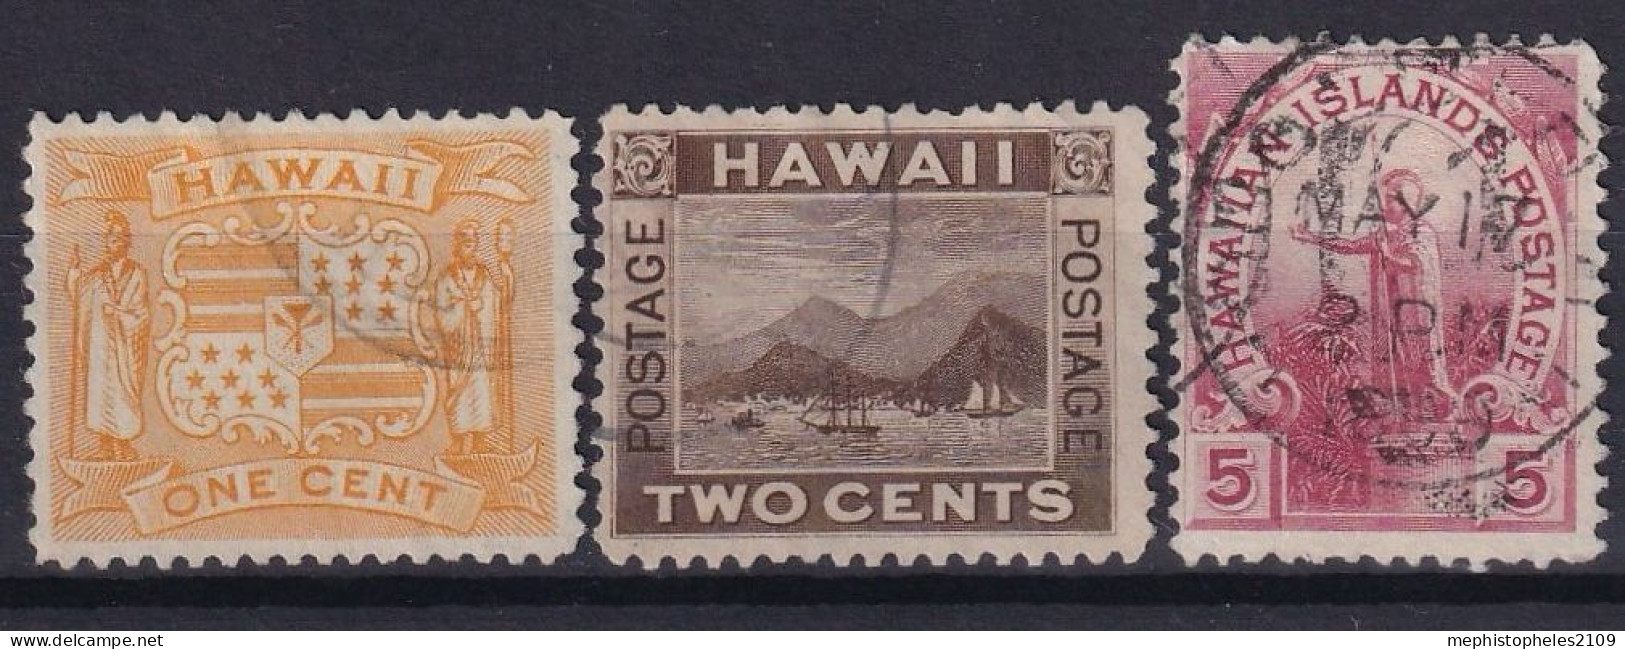 HAWAII 1894 - Canceled - Sc# 74-76 - Hawai